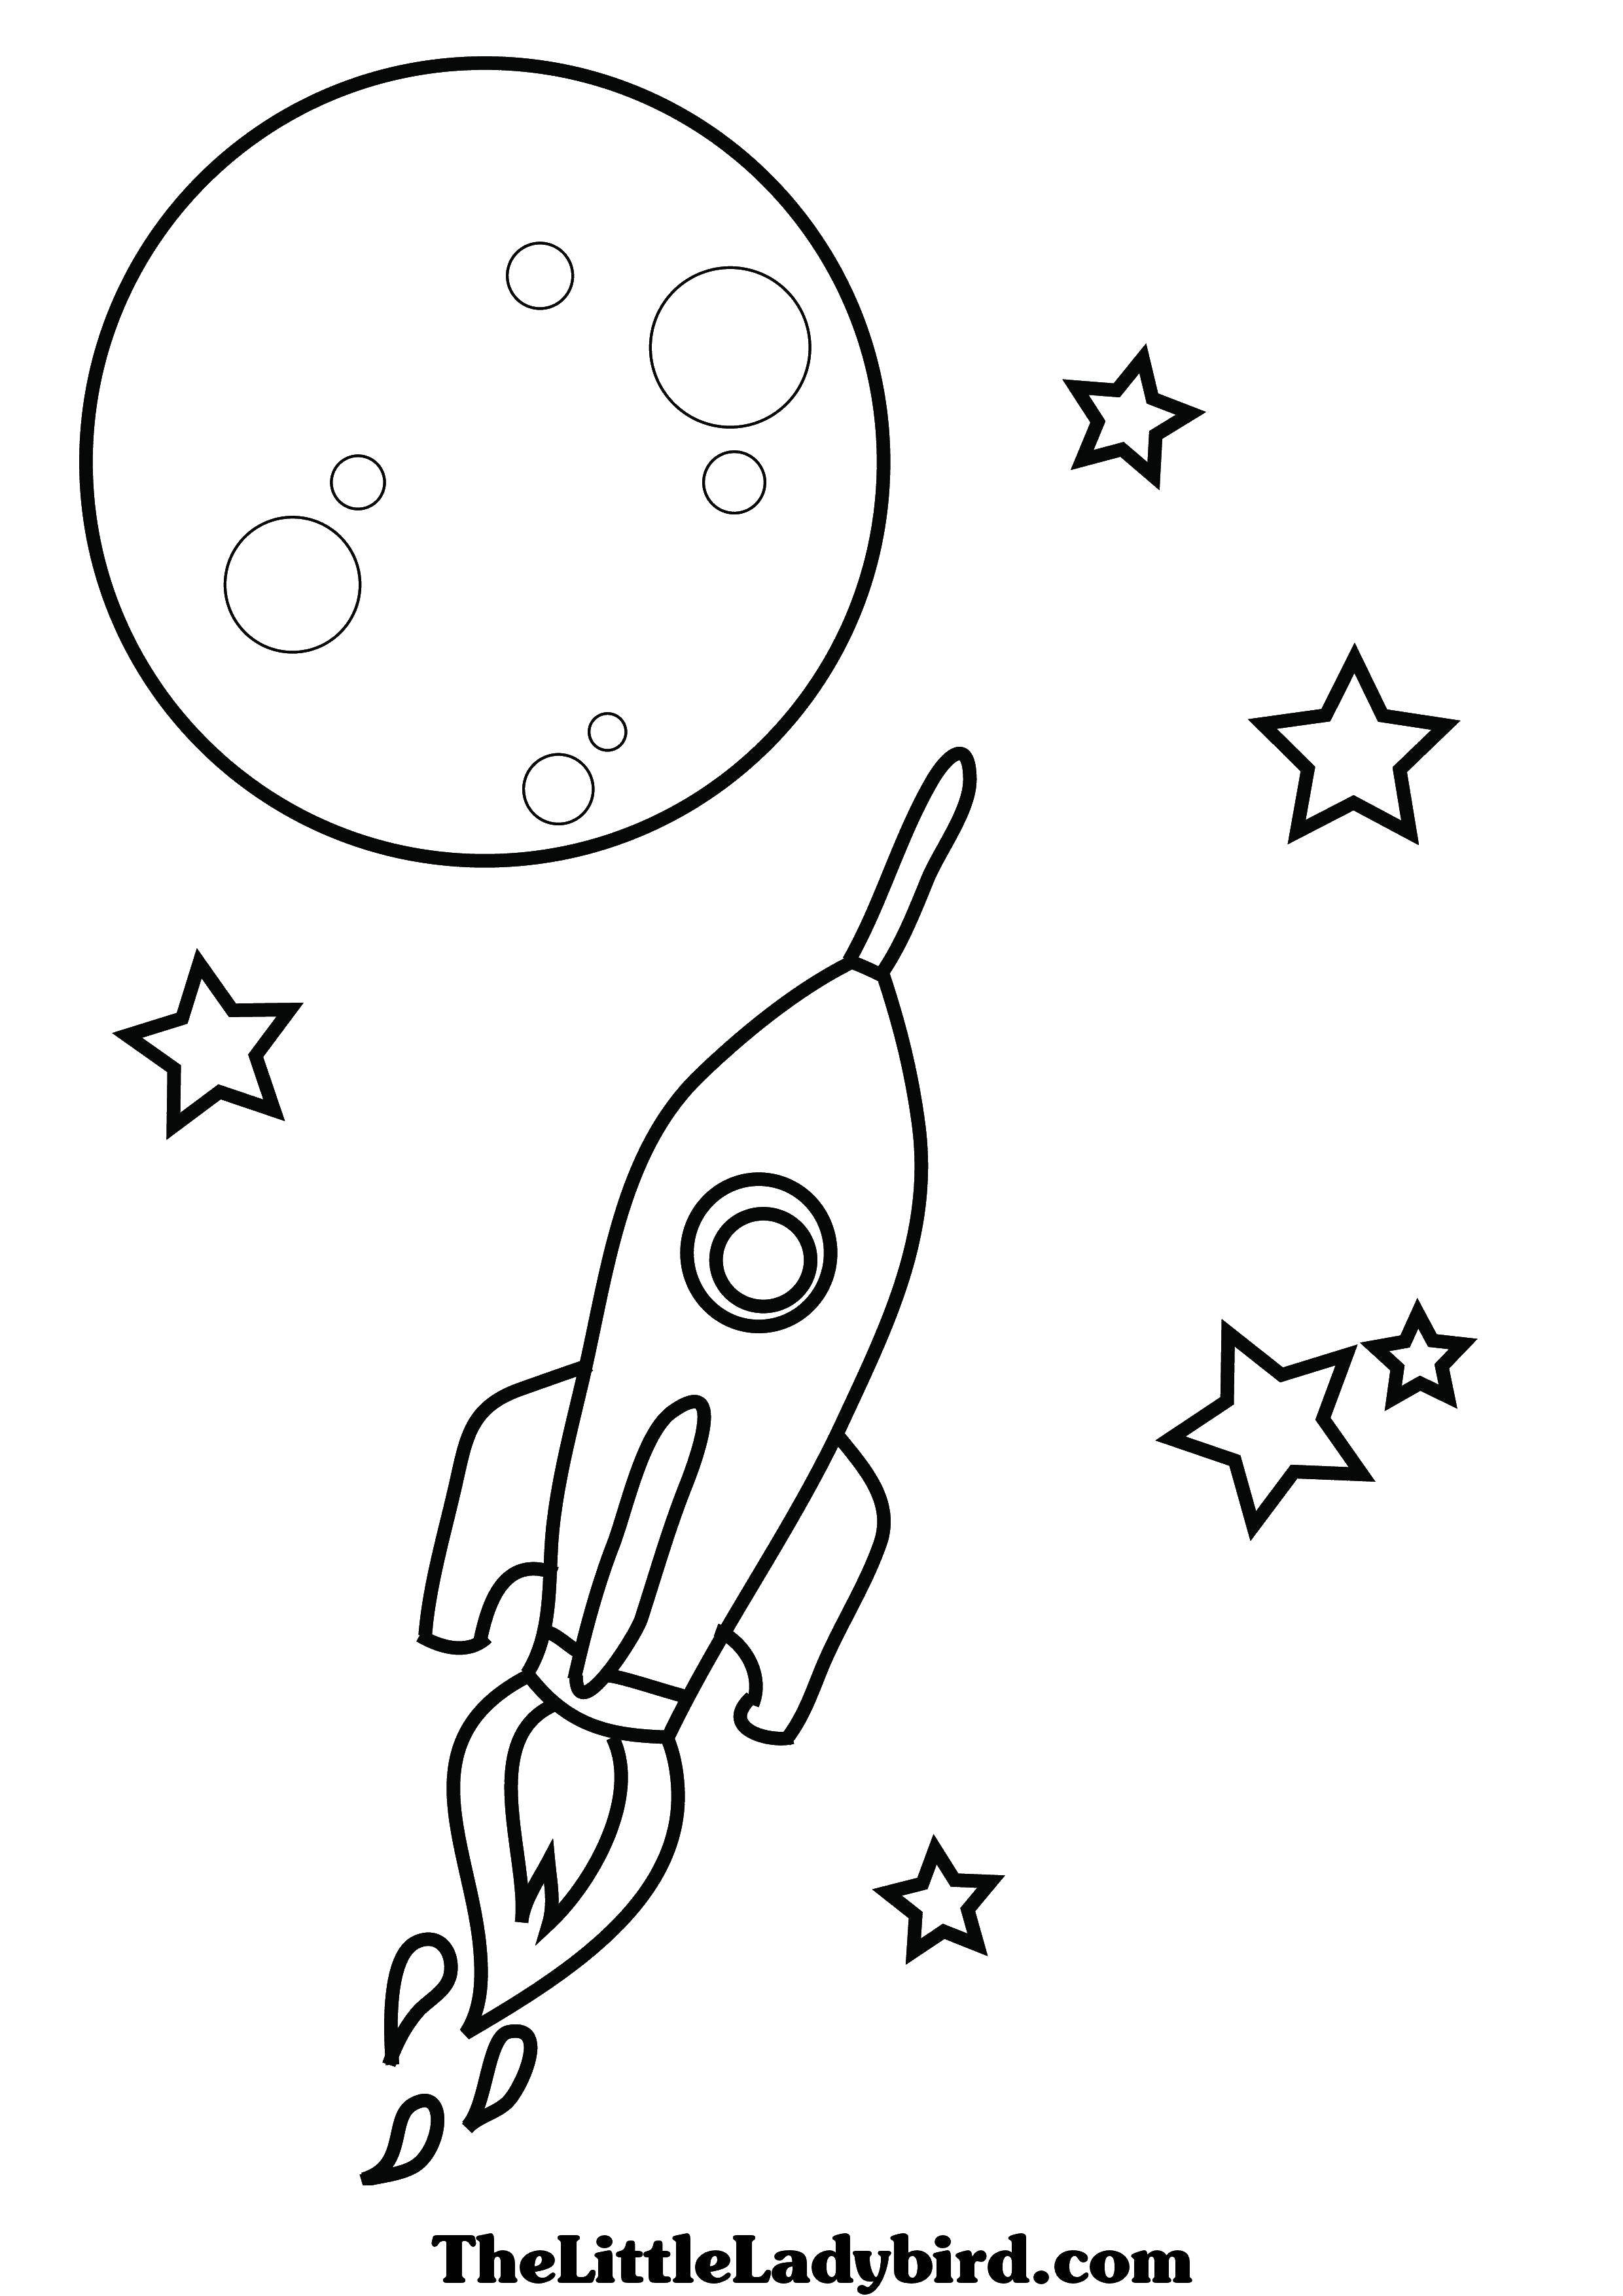 Название: Раскраска Ракета, луна, звезды. Категория: космические корабли. Теги: космос, планеты, звезды, ракета.